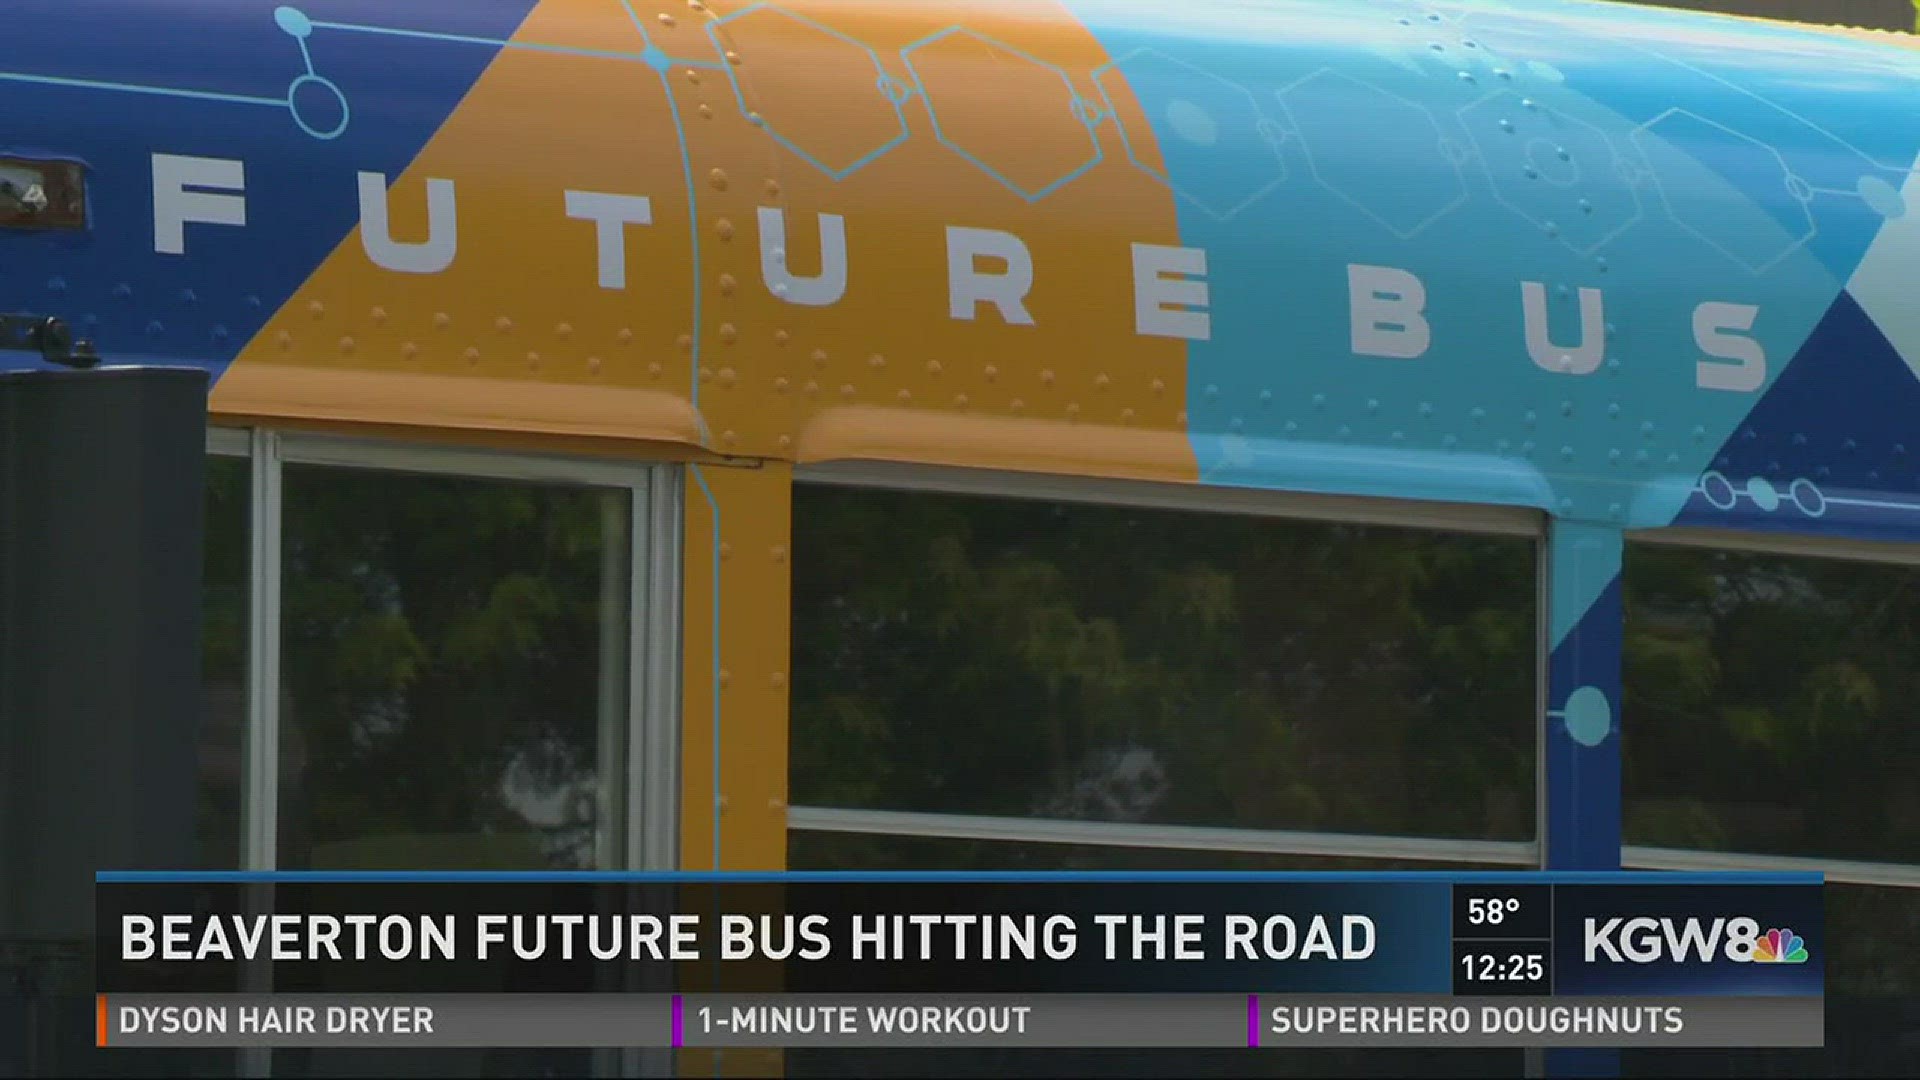 Beaverton Future Bus hits the road